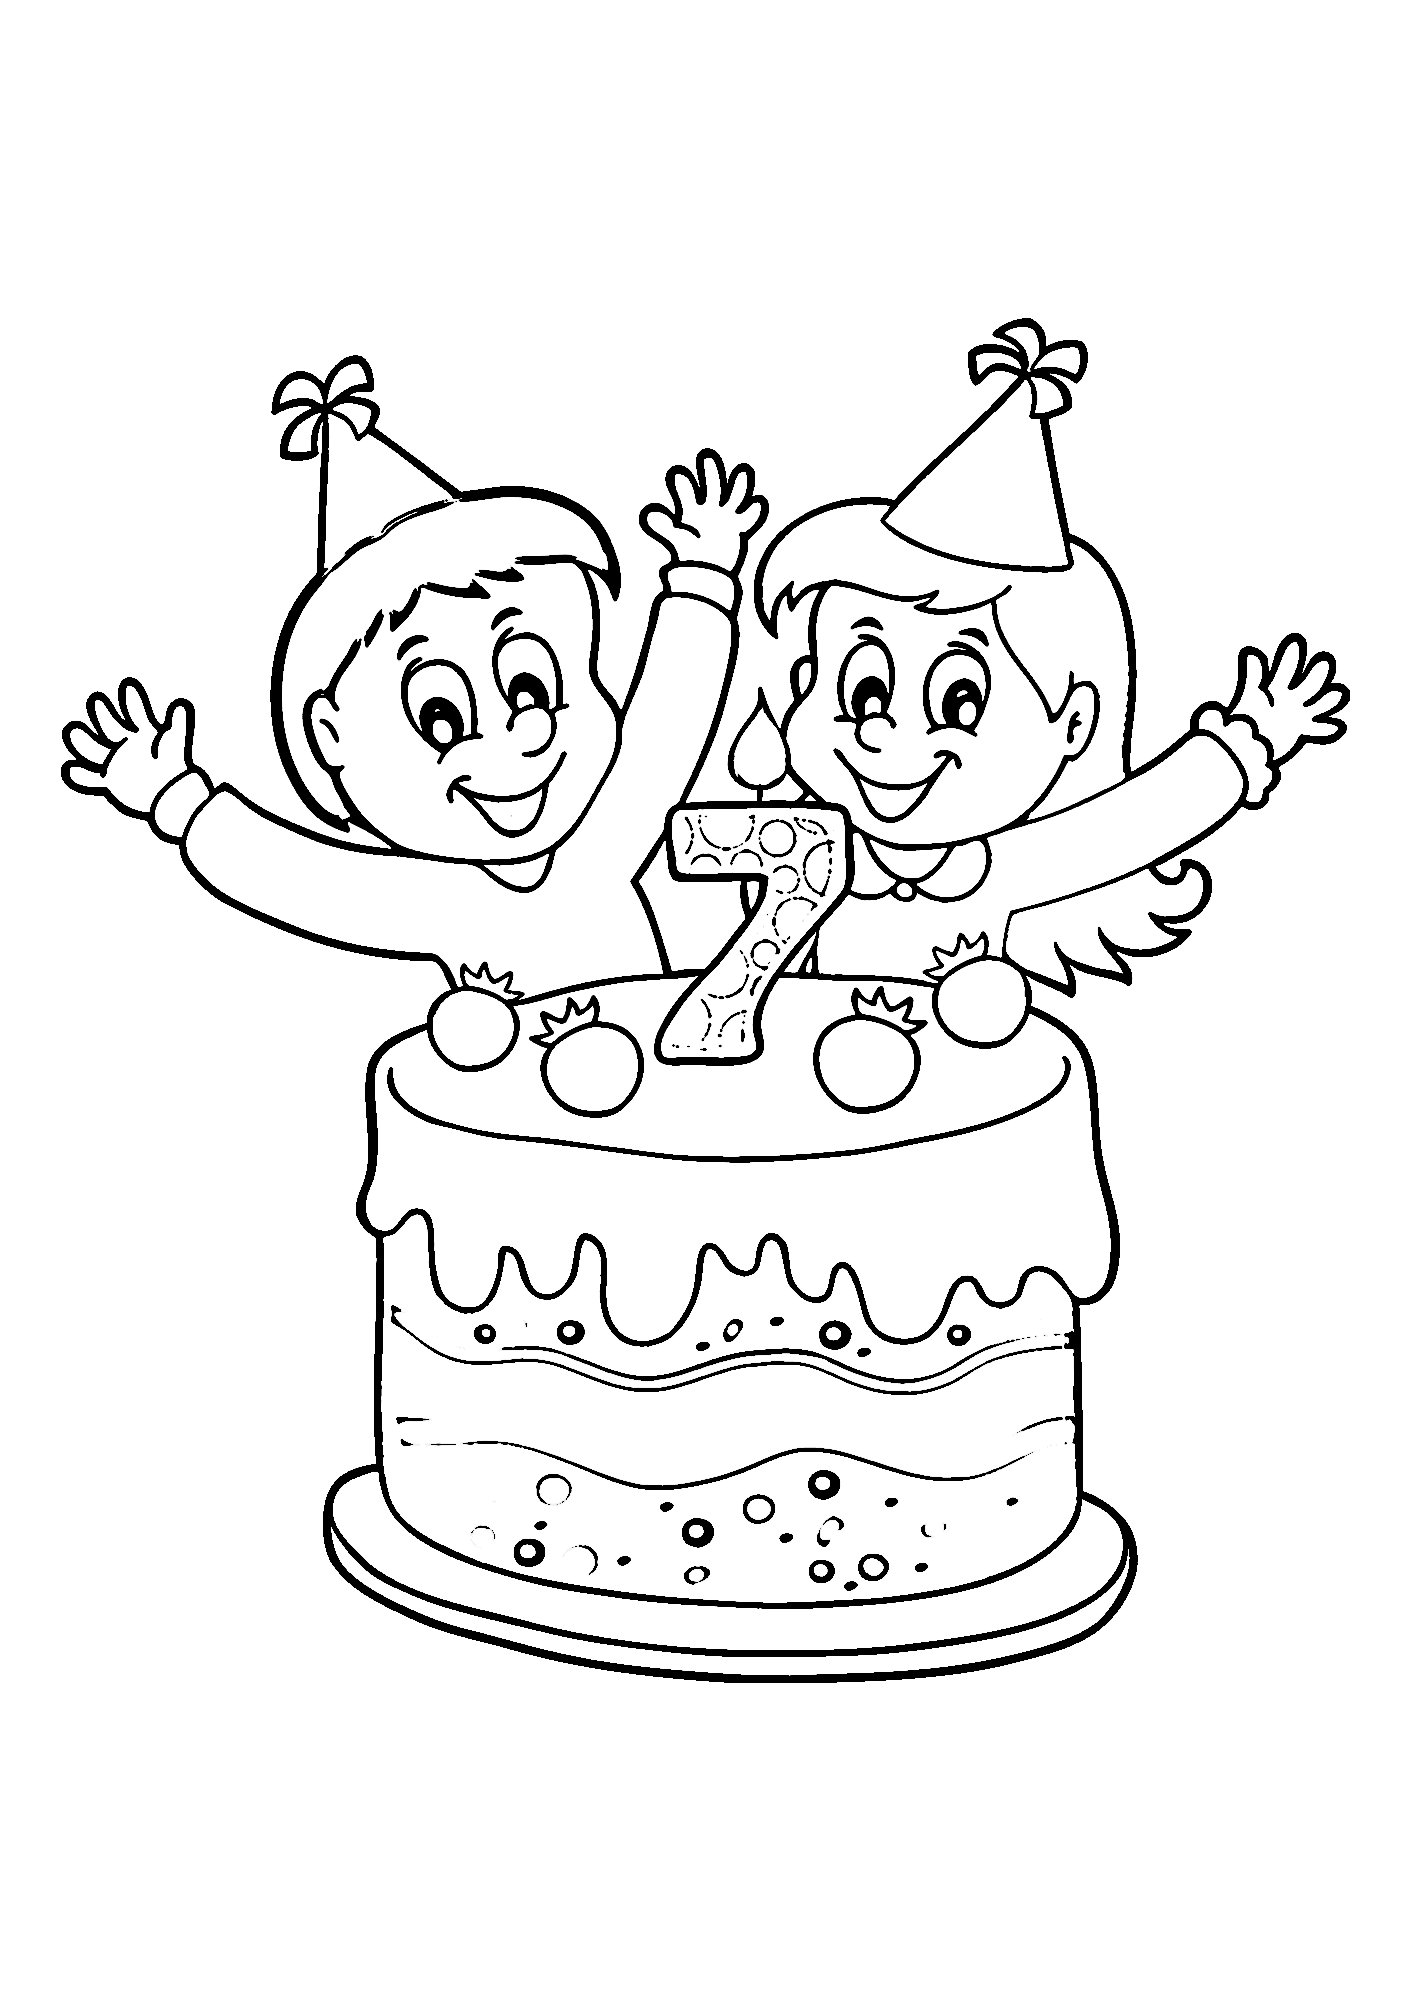 Happy Birthday Boy Image Coloring Page